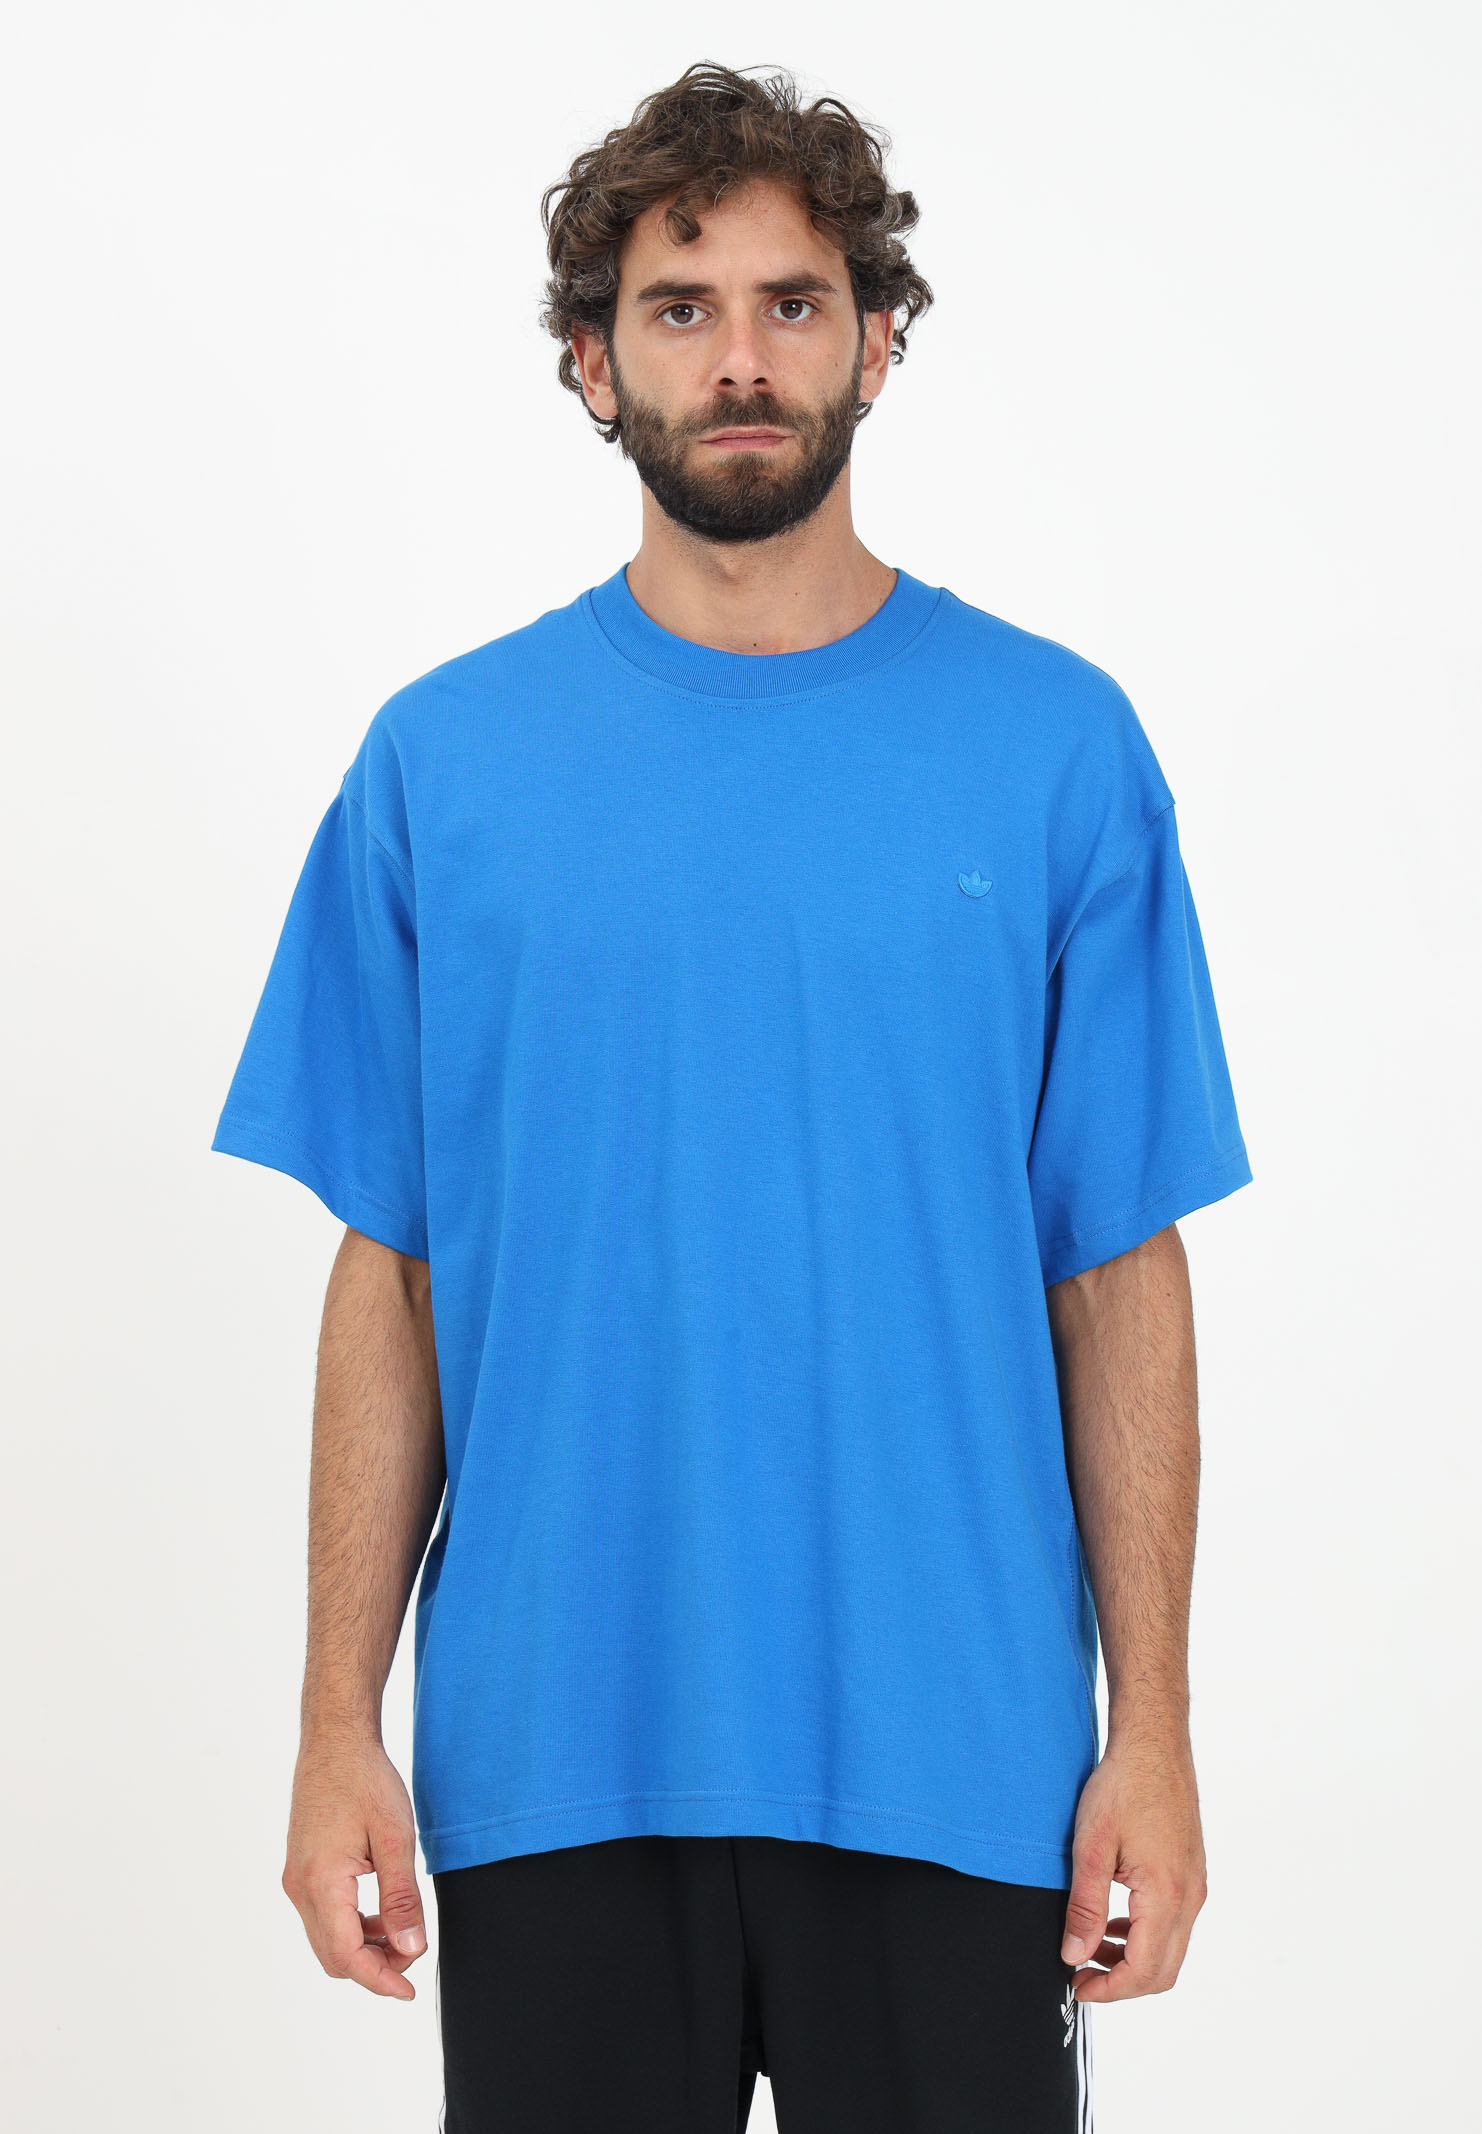 ORIGINALS light Contempo Pavidas ADIDAS t-shirt Adicolor - - men\'s blue